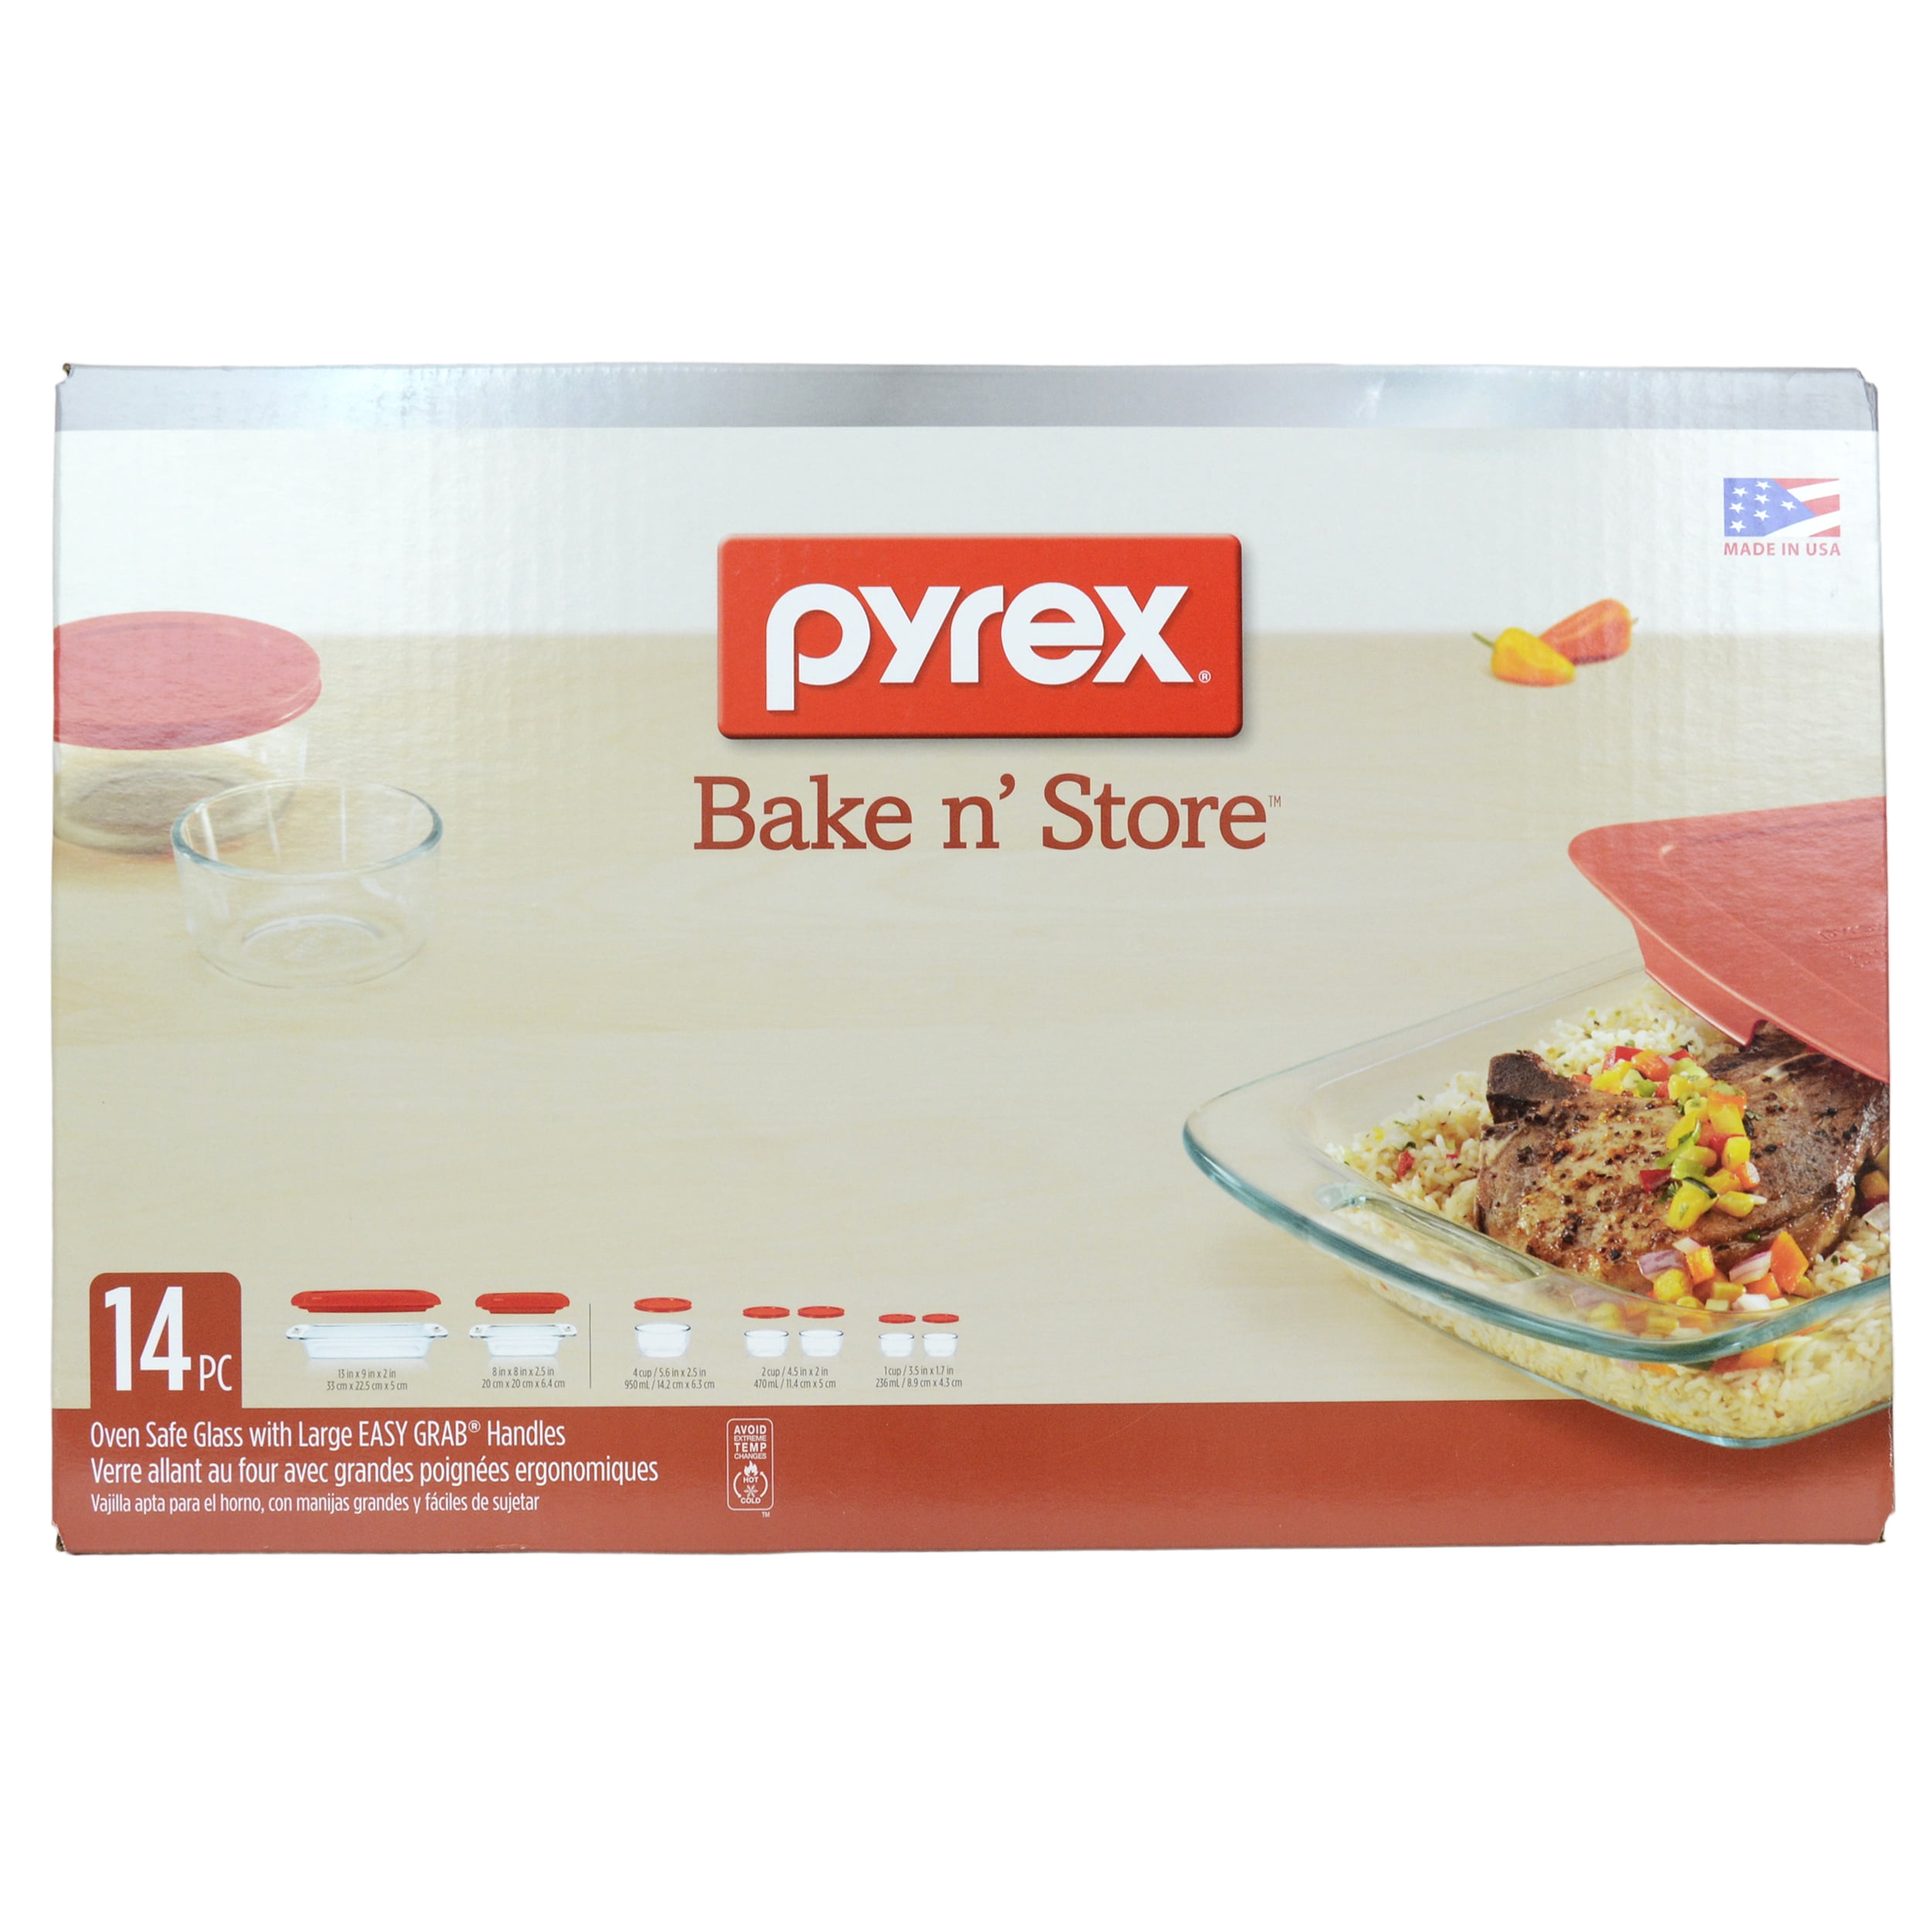 GENUINE Pyrex Bake n' Store 18 Pc NEW! Break Resistant Storage Set 1122869 